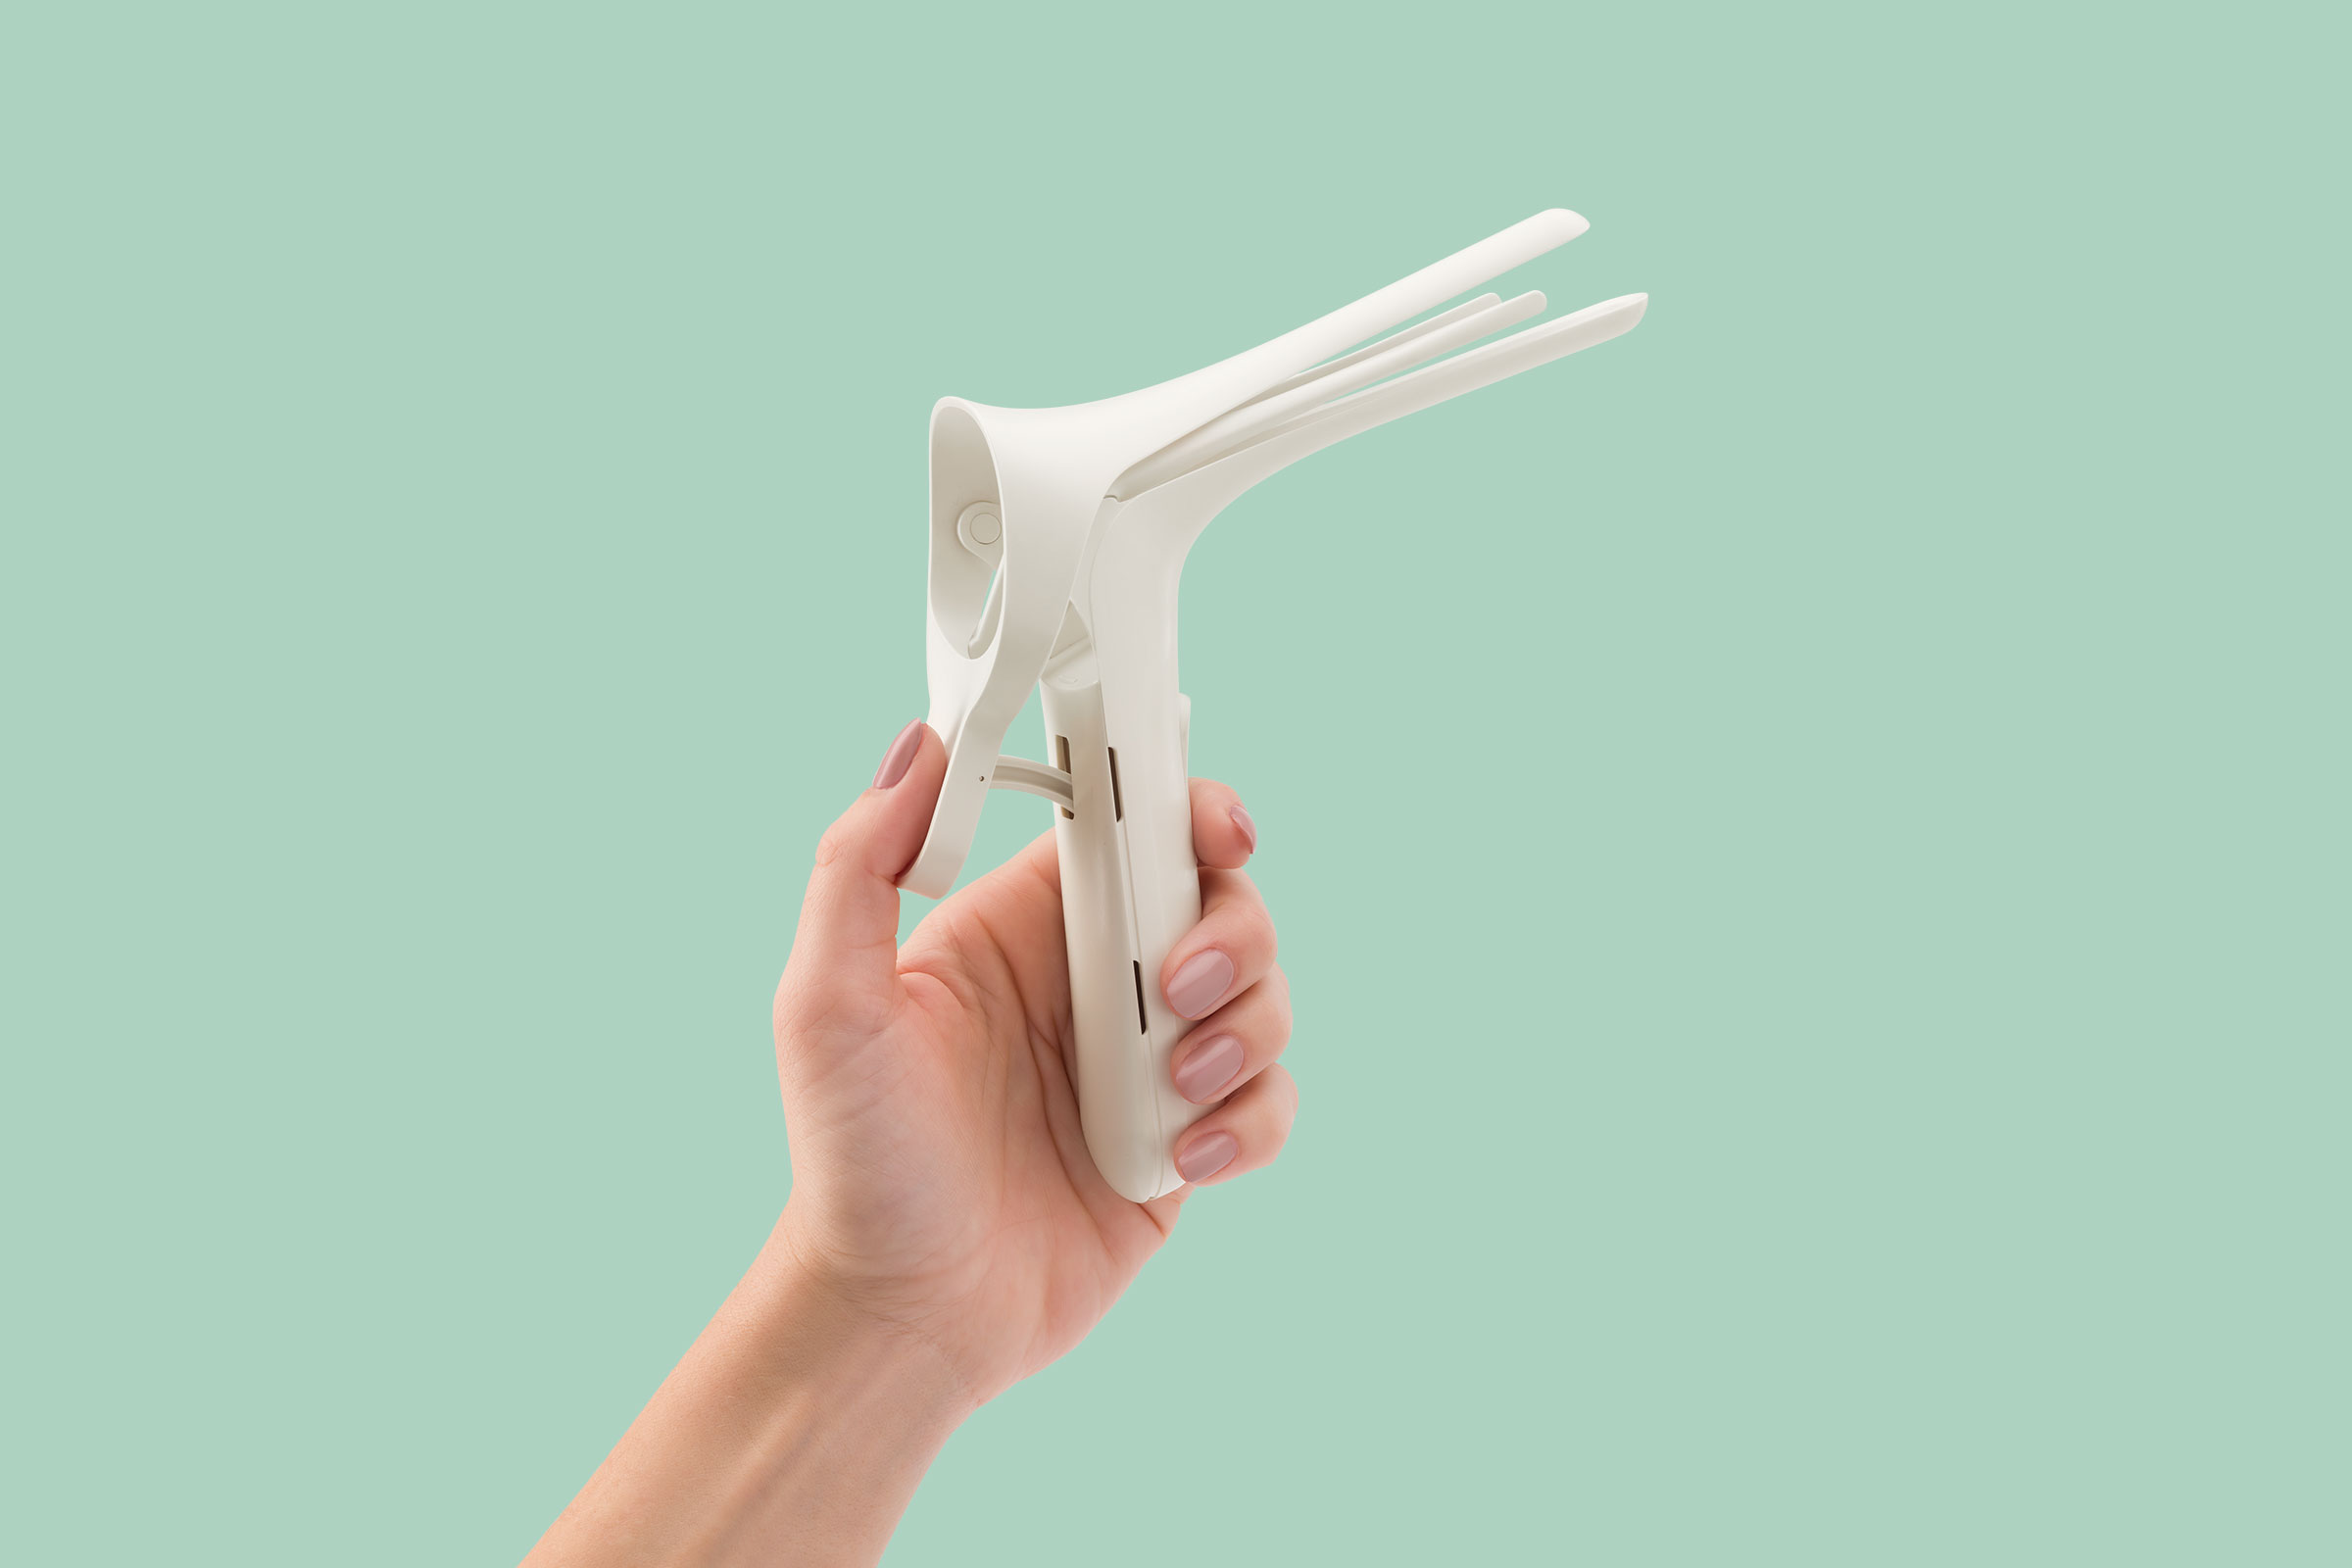 Best Inventions 2020: Nella NuSpec Reusable Vaginal Speculum